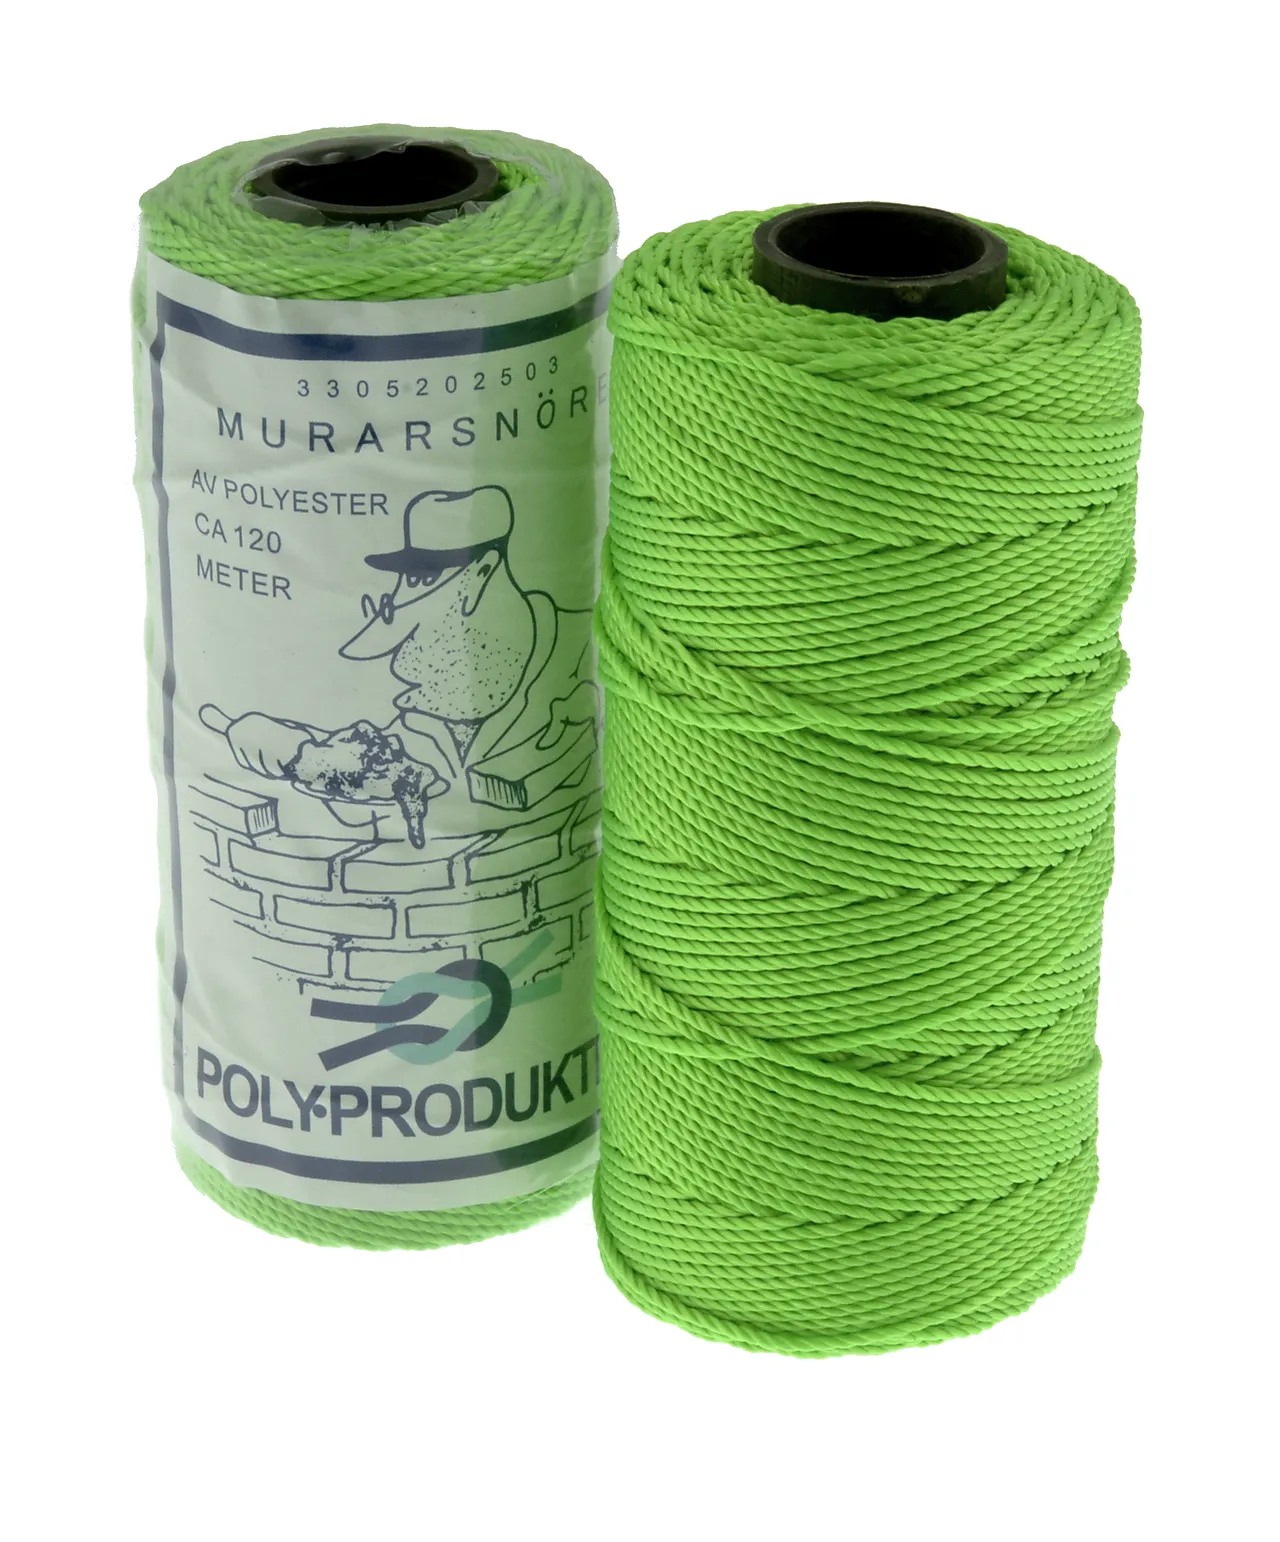 Murersnor neongrønn polyester 120m tvinnet polyester 1,5mm